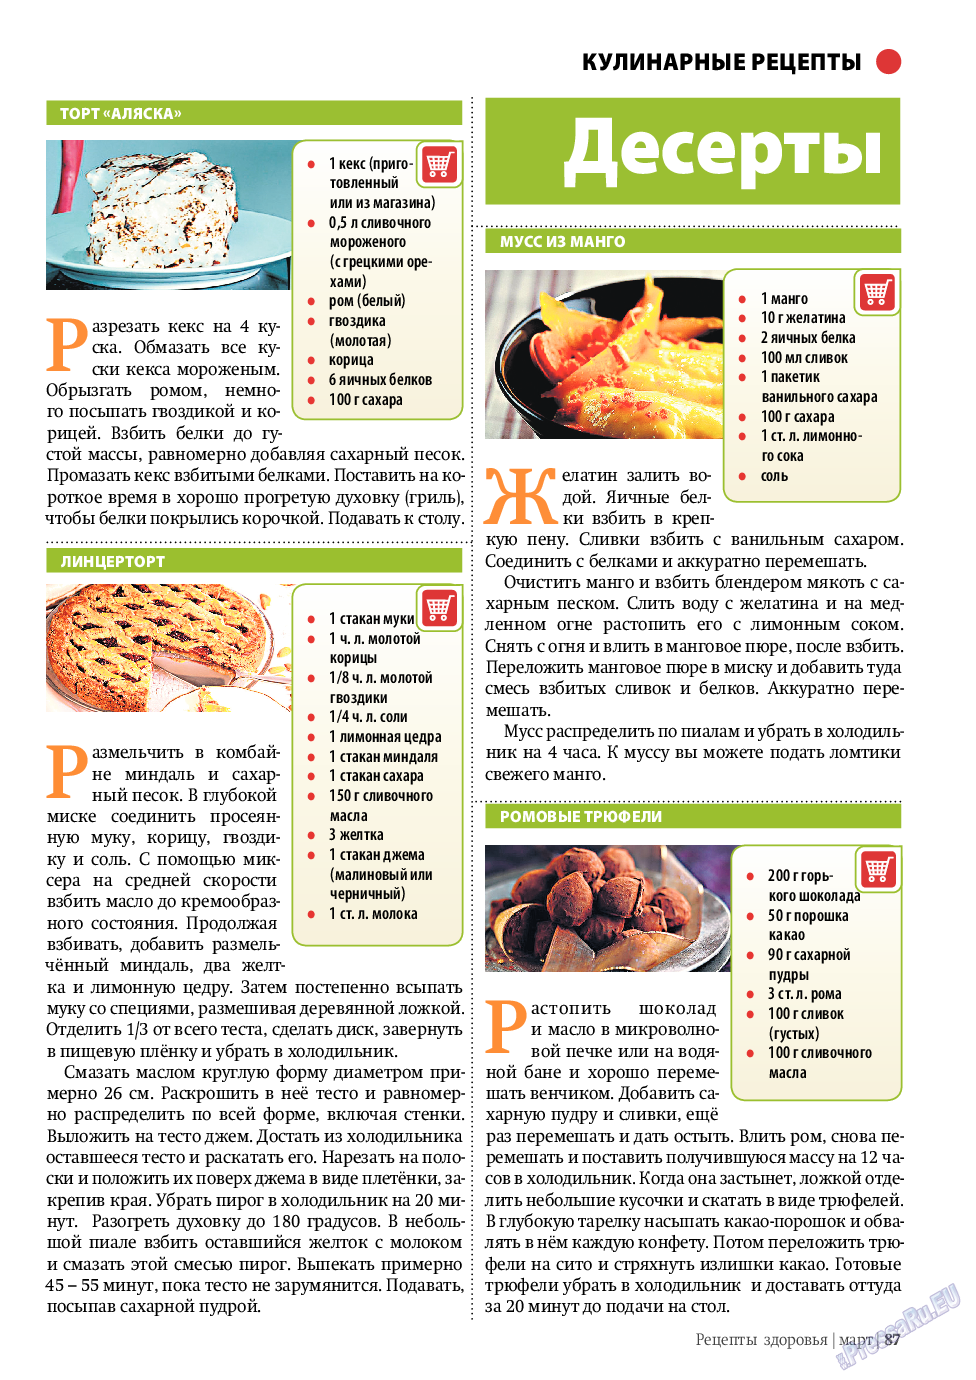 Рецепты здоровья, журнал. 2010 №3 стр.87